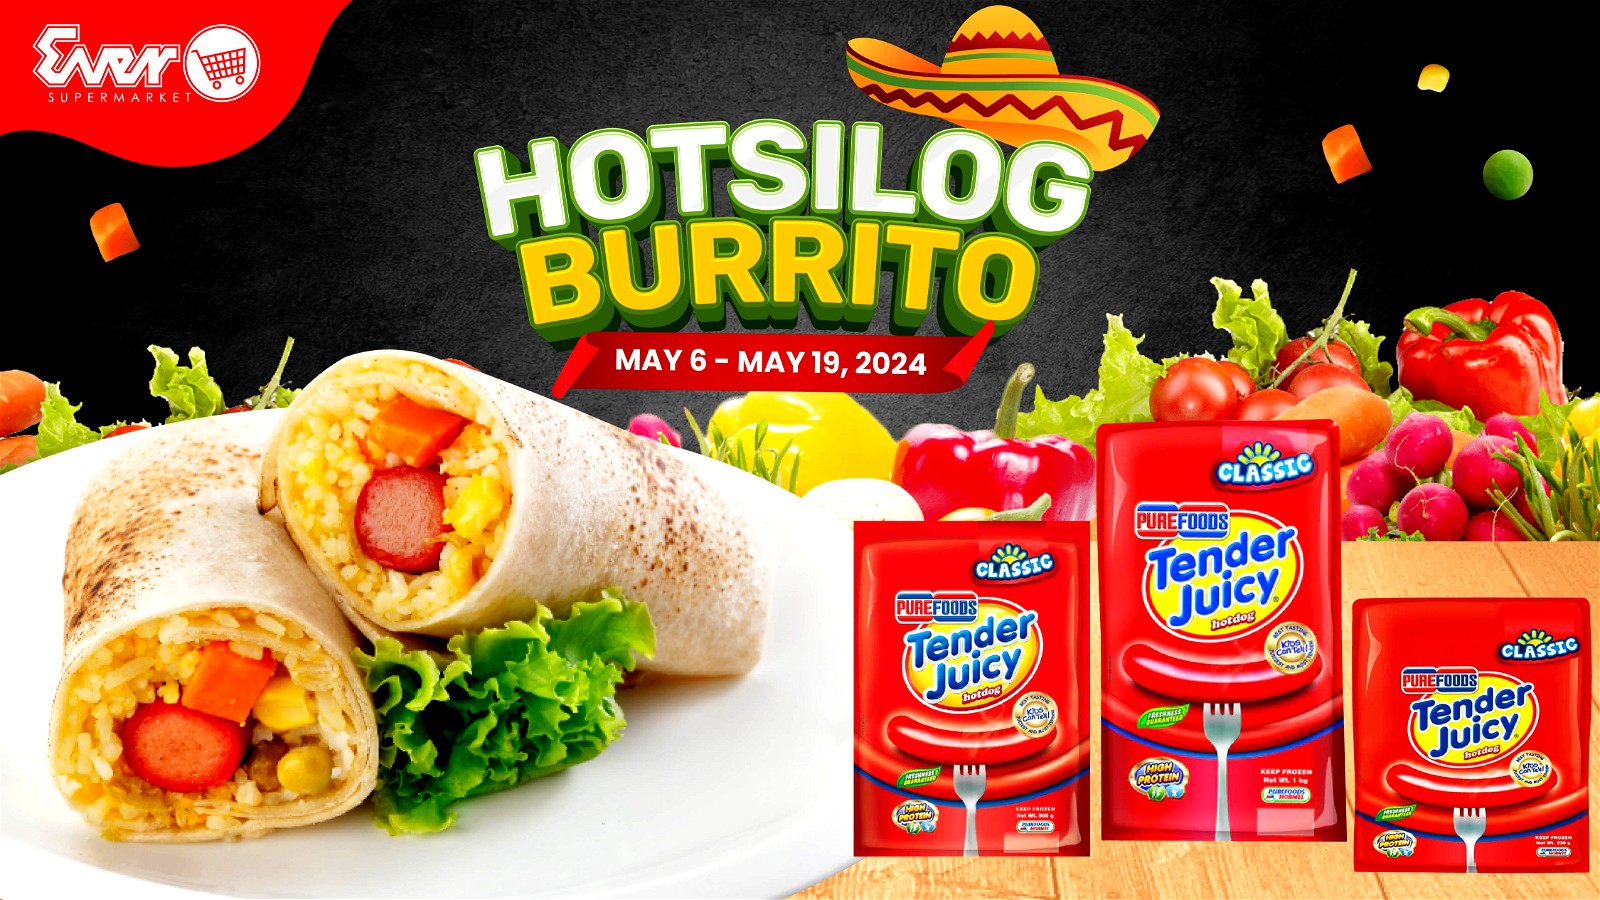 Image of Purefoods Hotsilog Burrito